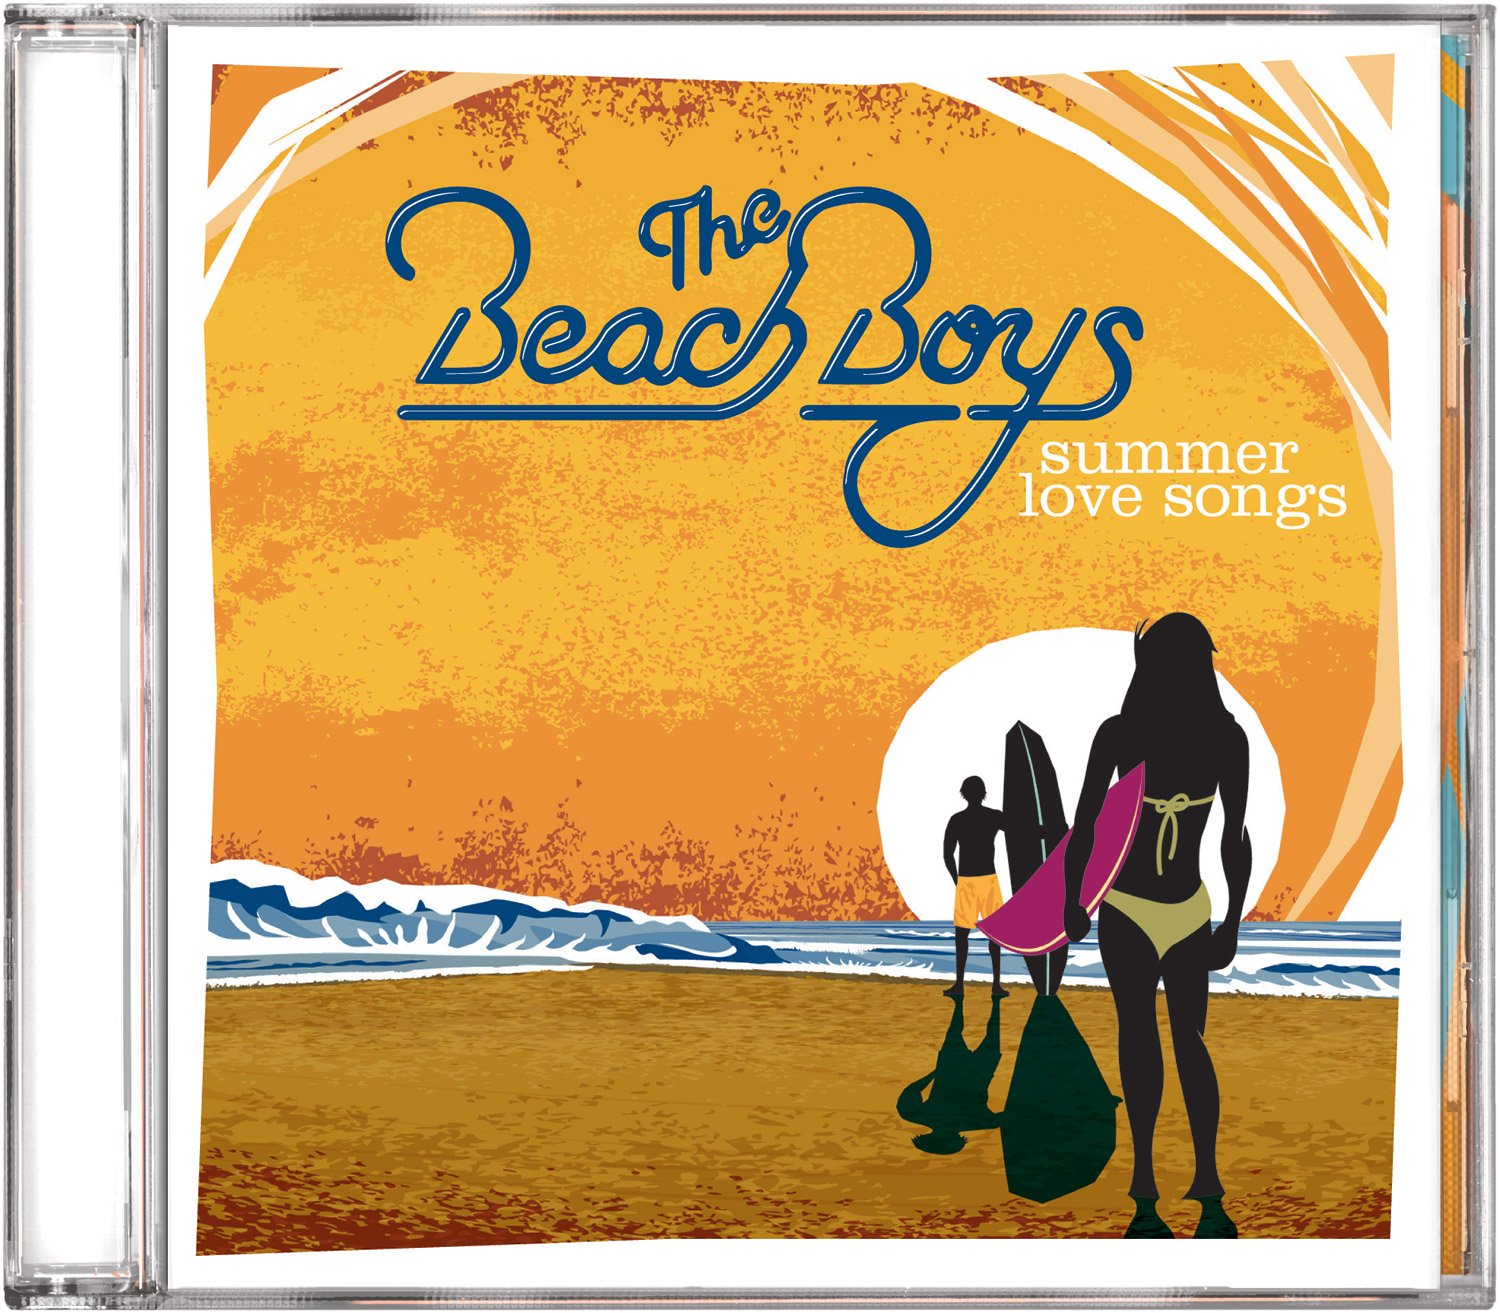 The Beach Boys Summer Love Songs